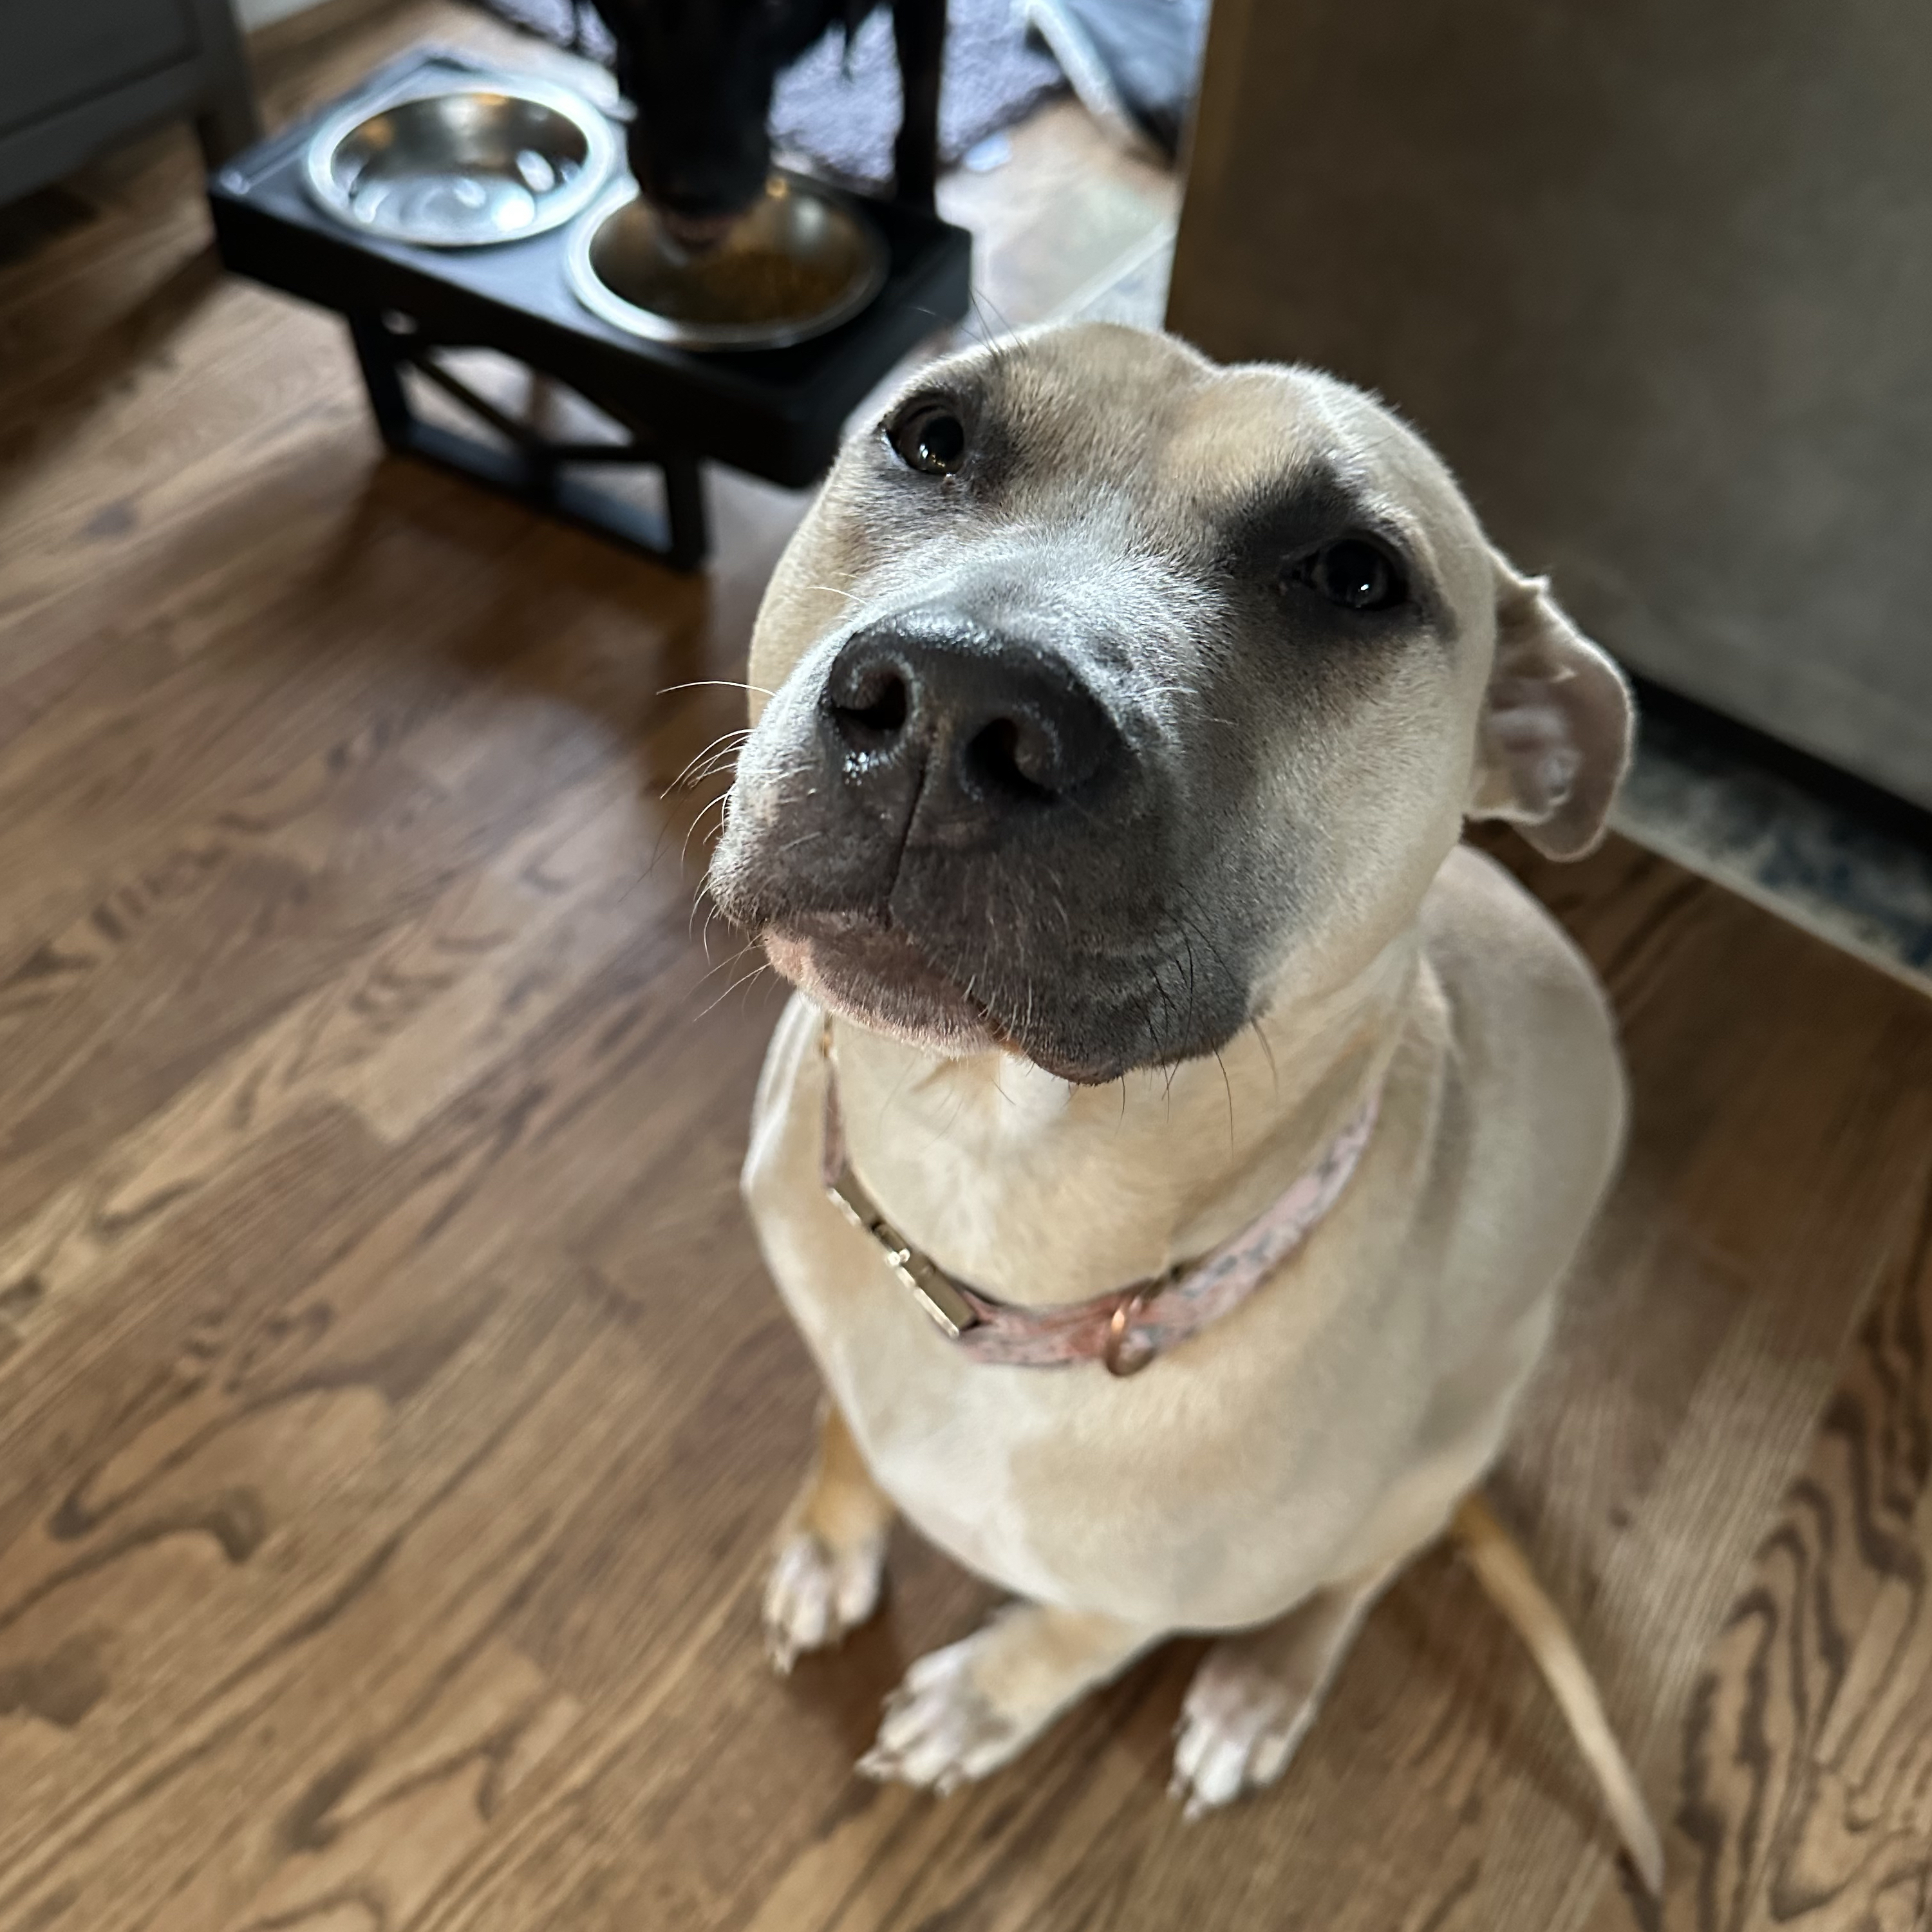 adoptable Dog in Cincinnati,OH named Kira